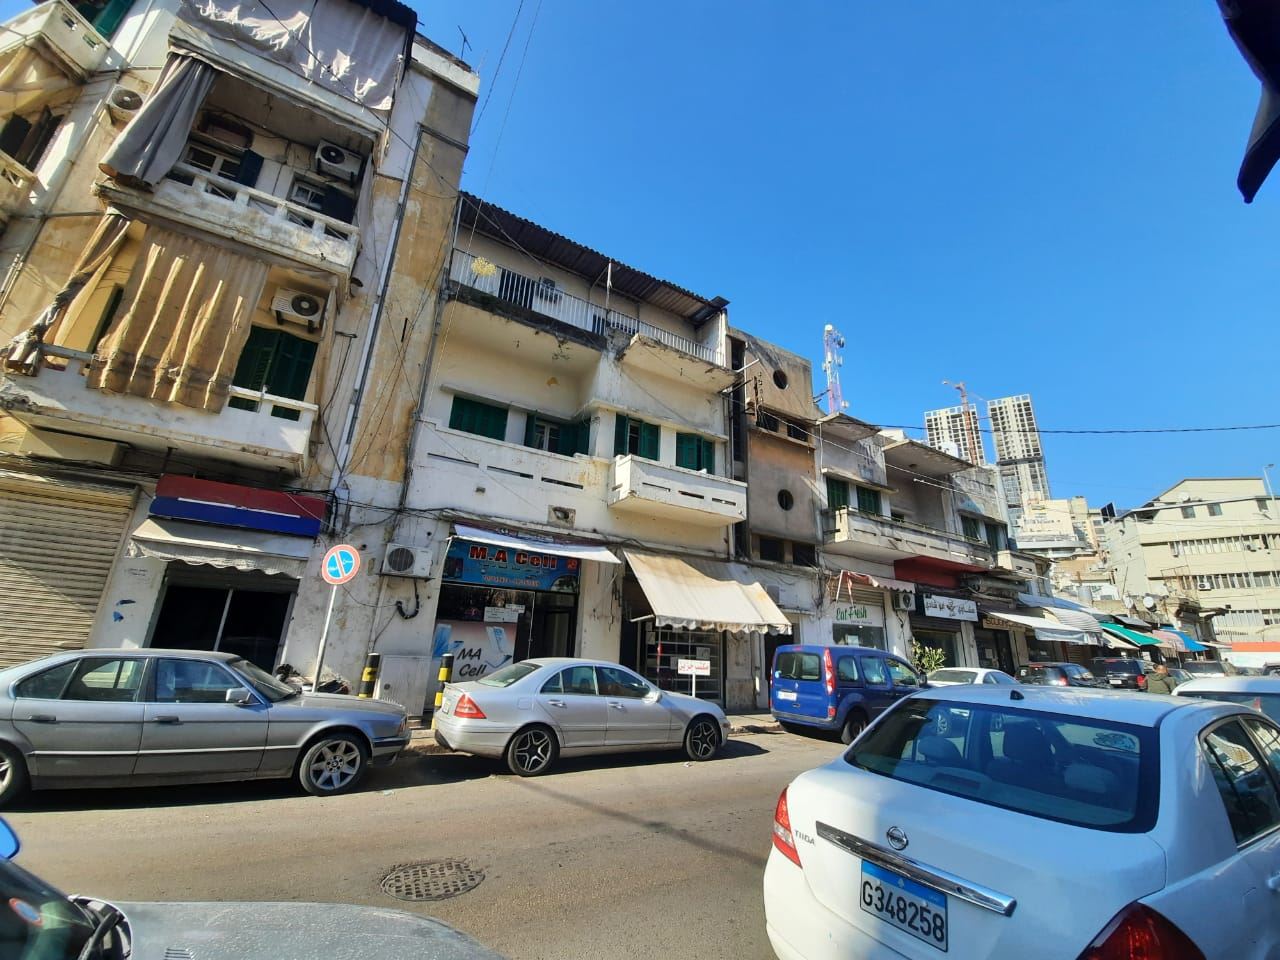 سعر ربطة الخبز في لبنان يرتفع.. والسكان يتراجعون عن شراء المناقيش!